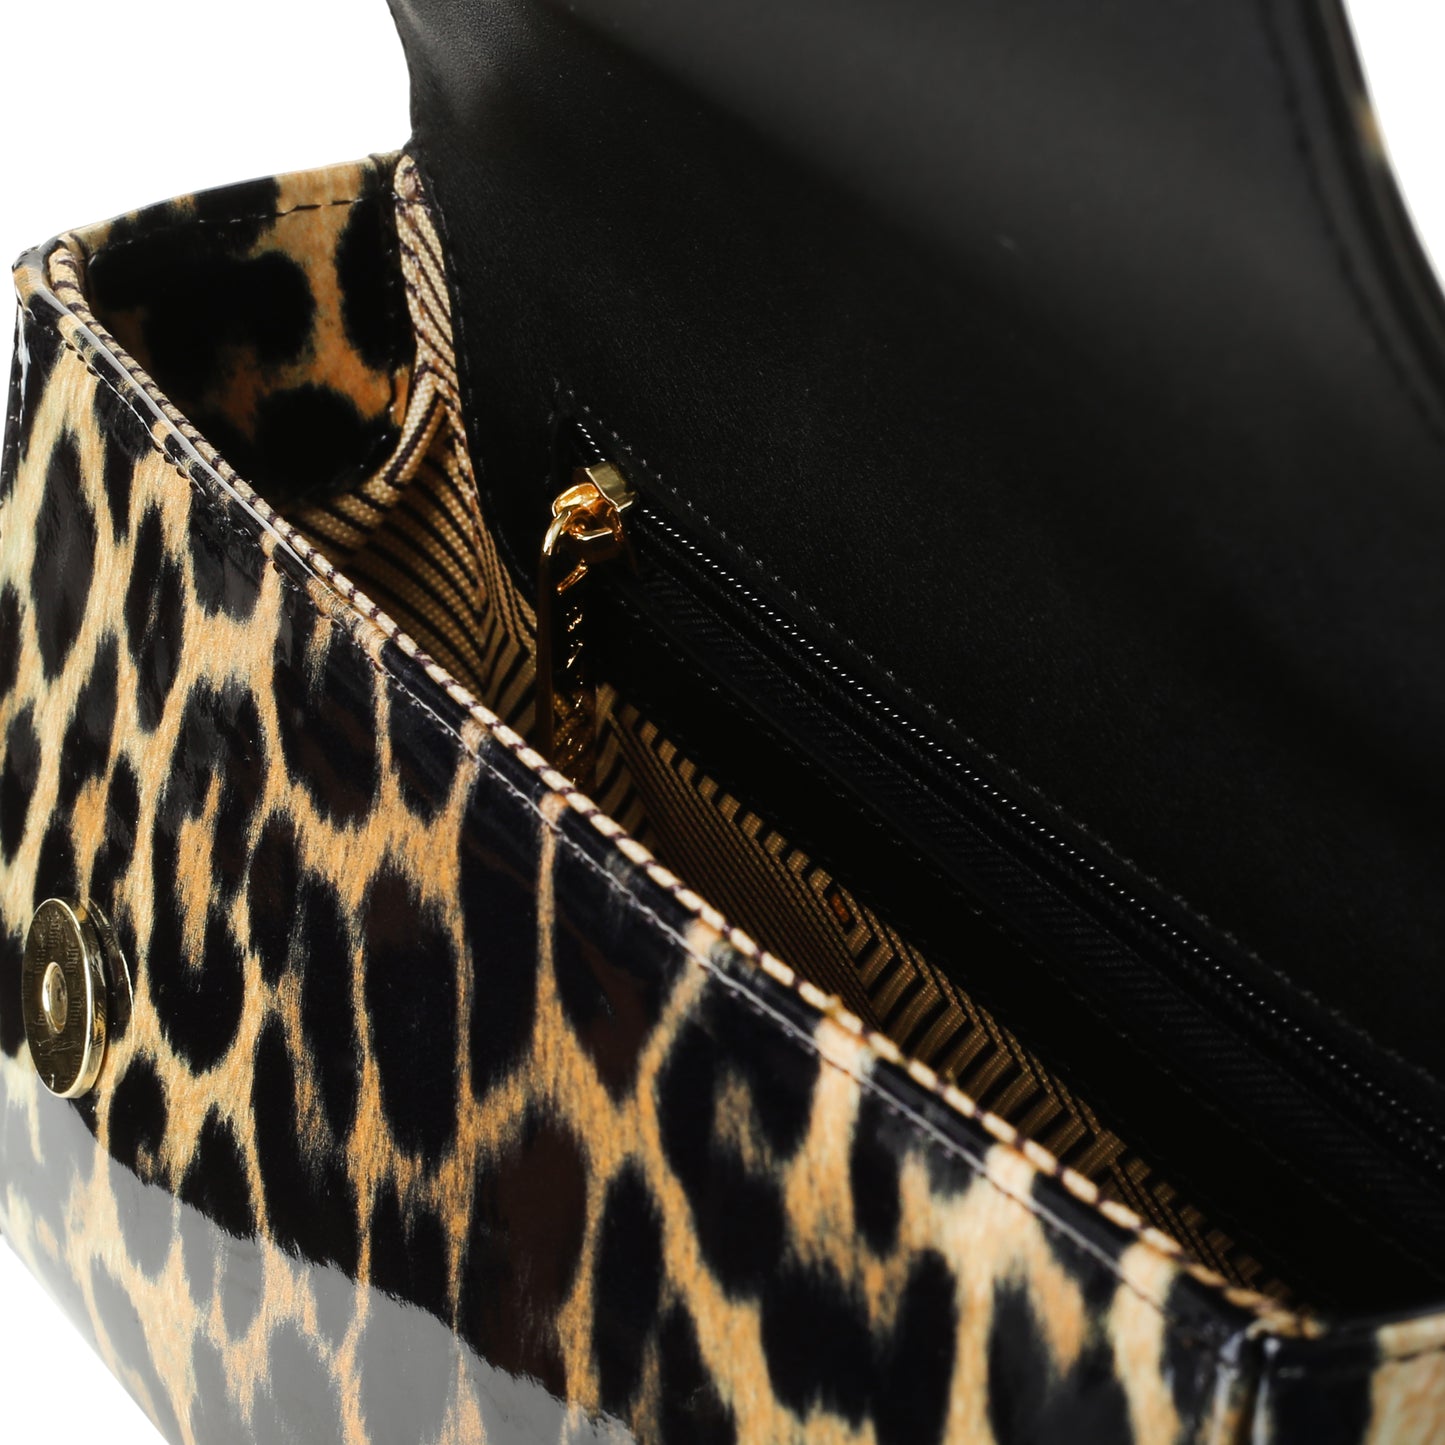 Gahari Damenhandtasche aus Leopardenleder